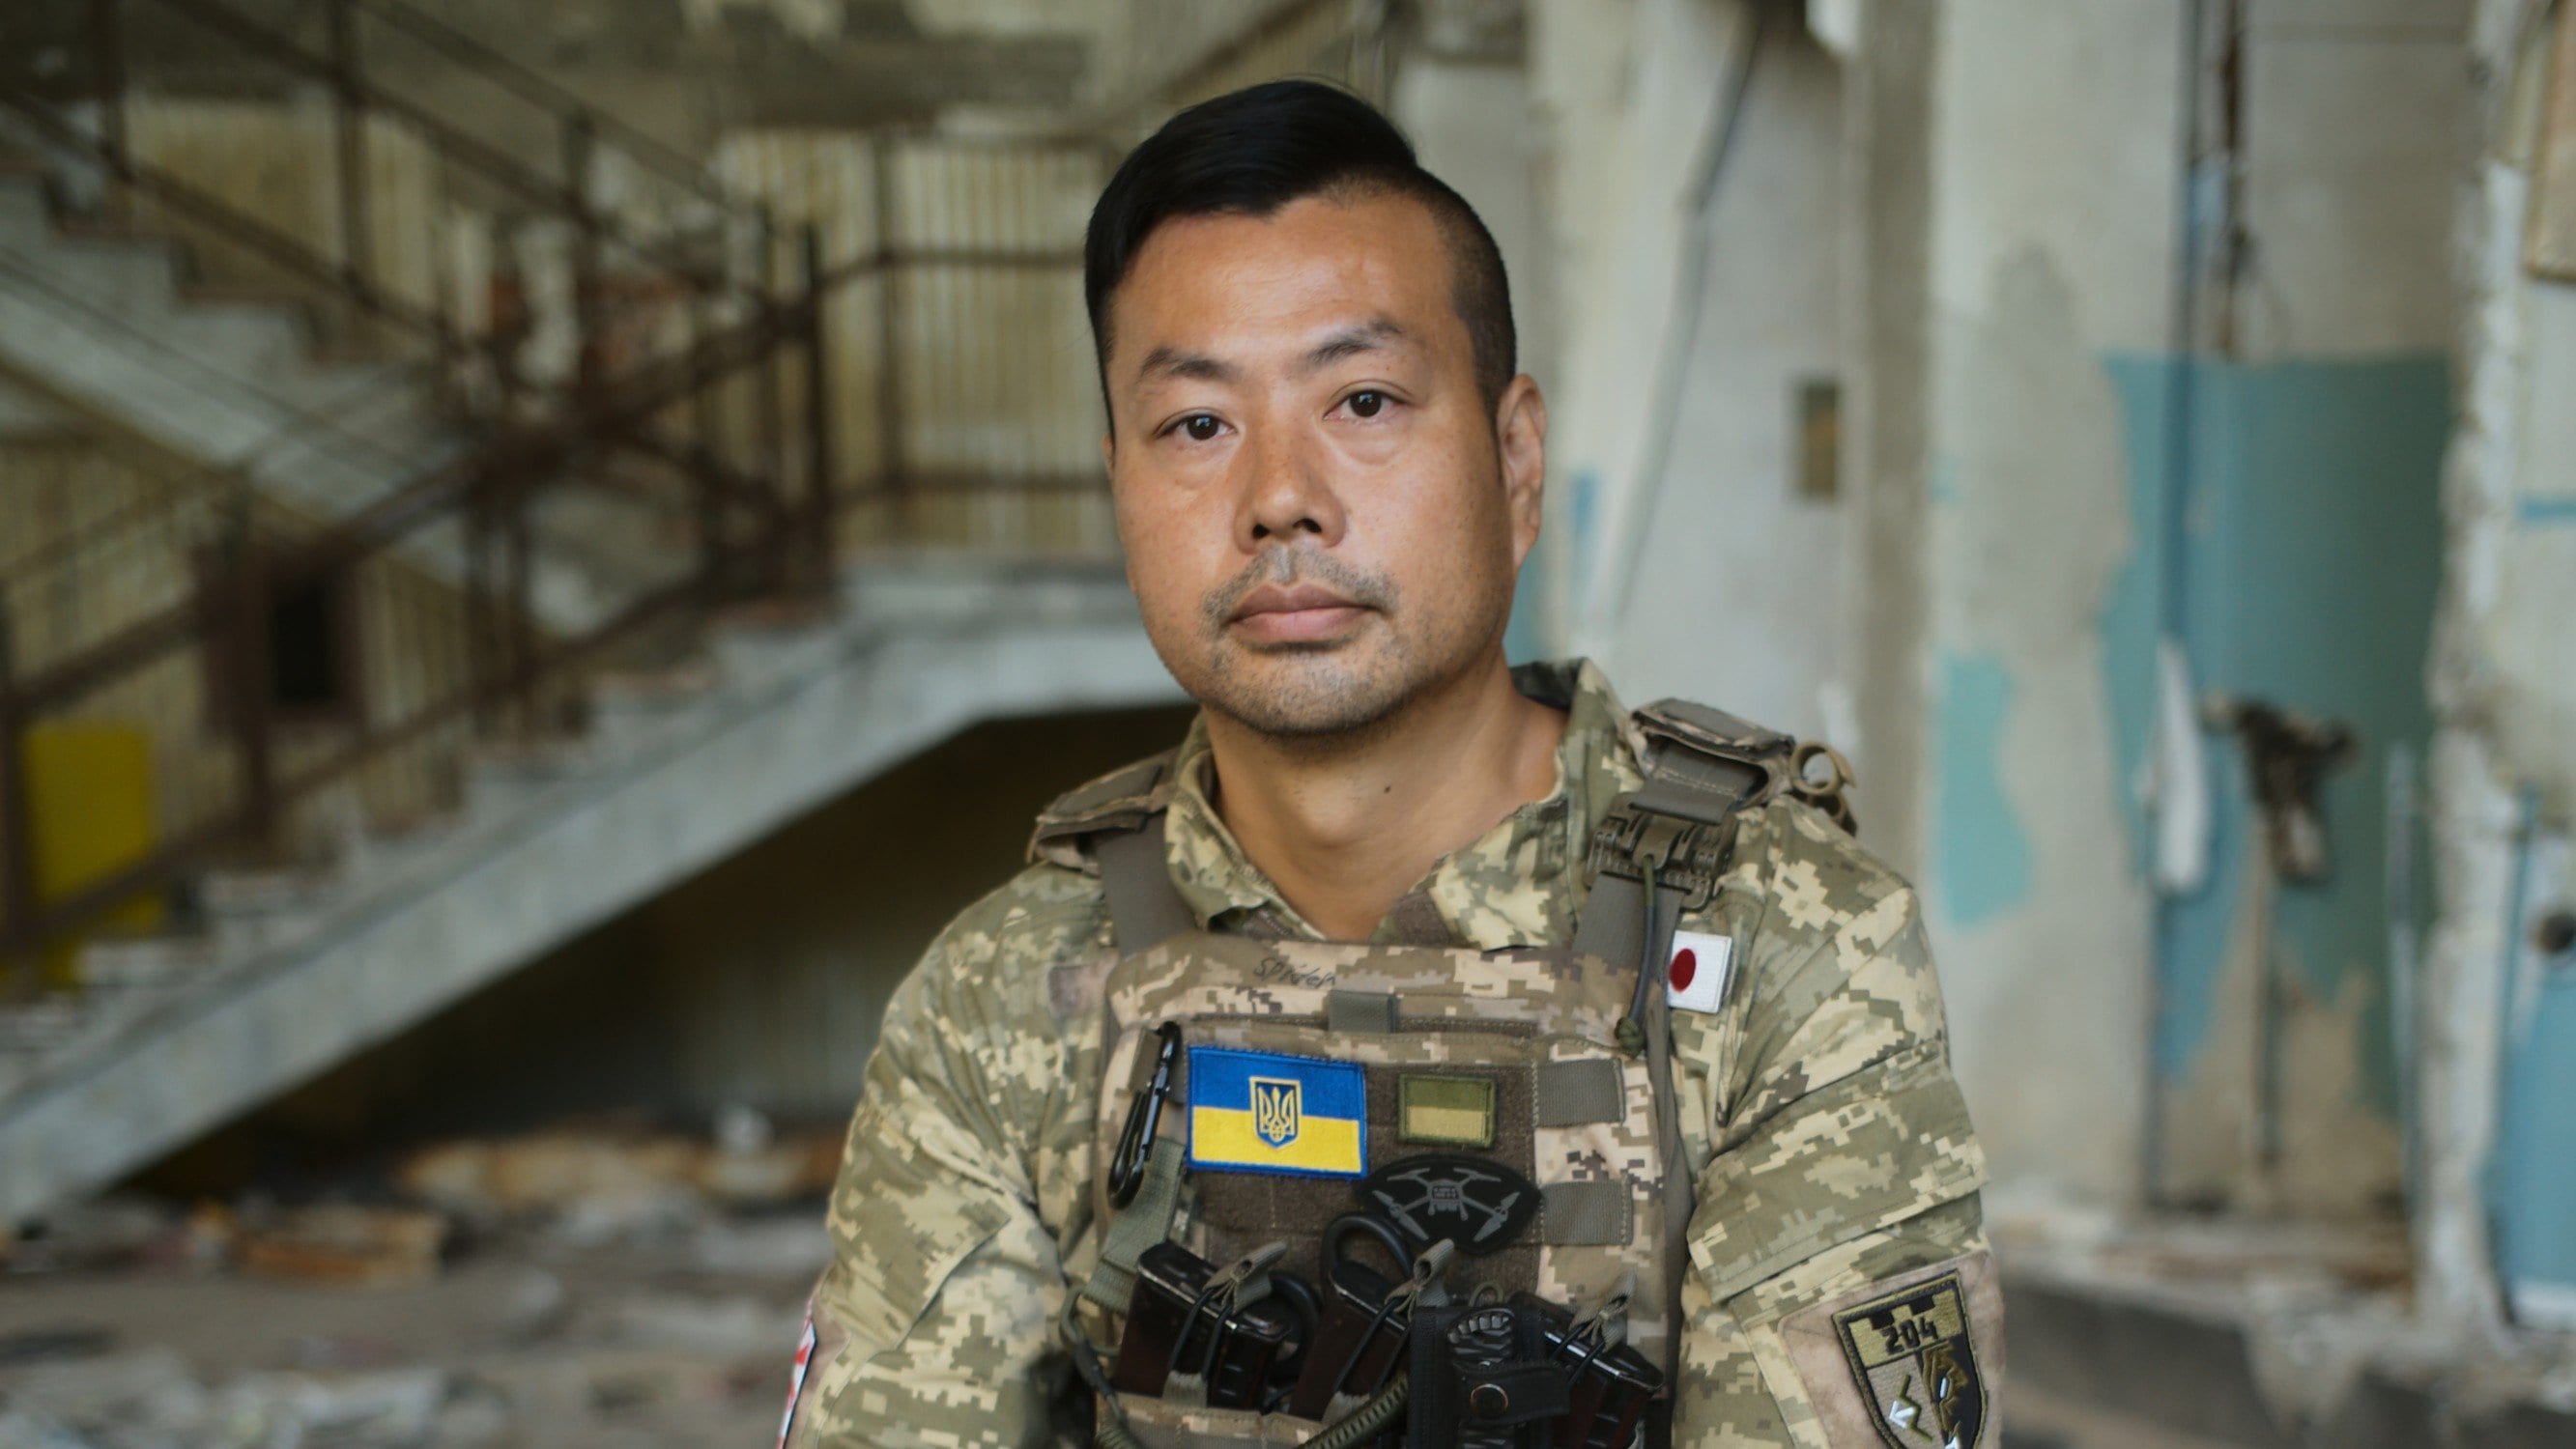 命の対価ともいうべき初任給は7万円…3歳の息子を日本に残し軍歴なしでウクライナ軍に入隊した45歳の日本人義勇兵の肖像